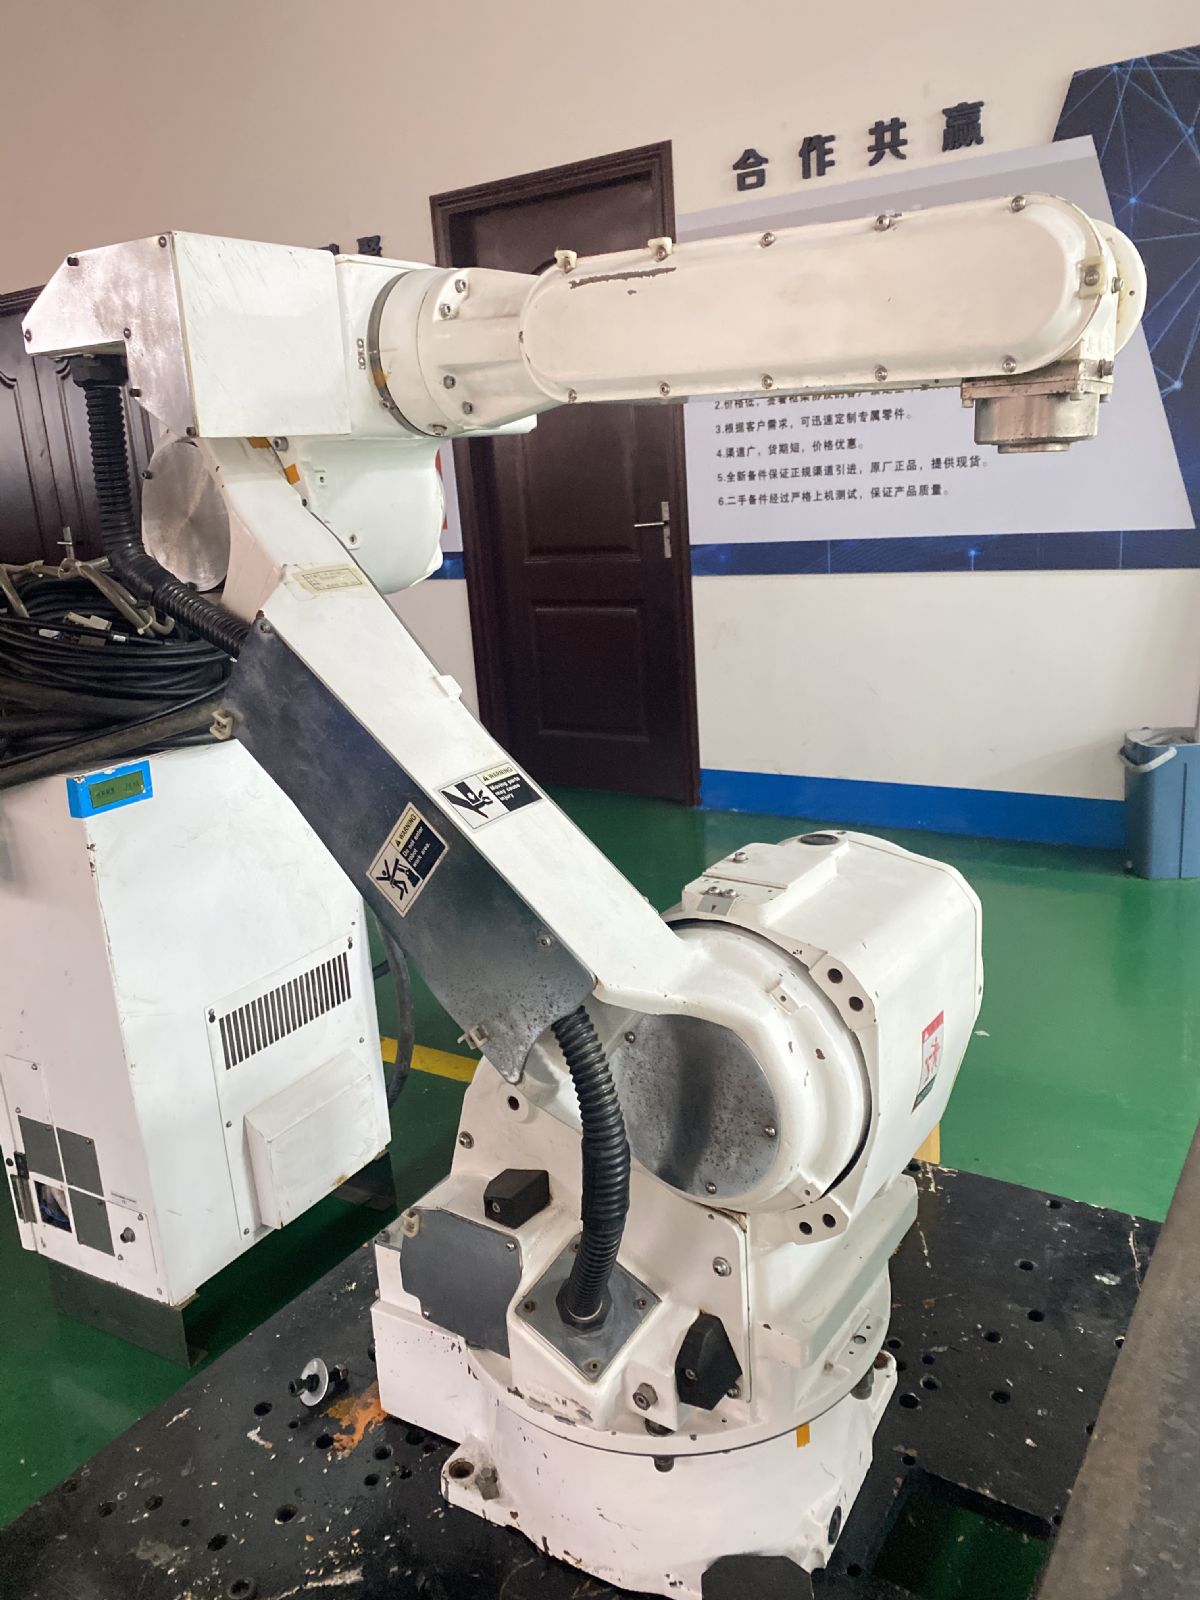 转让:安川机器人cr20 二手机器人、工业机器人